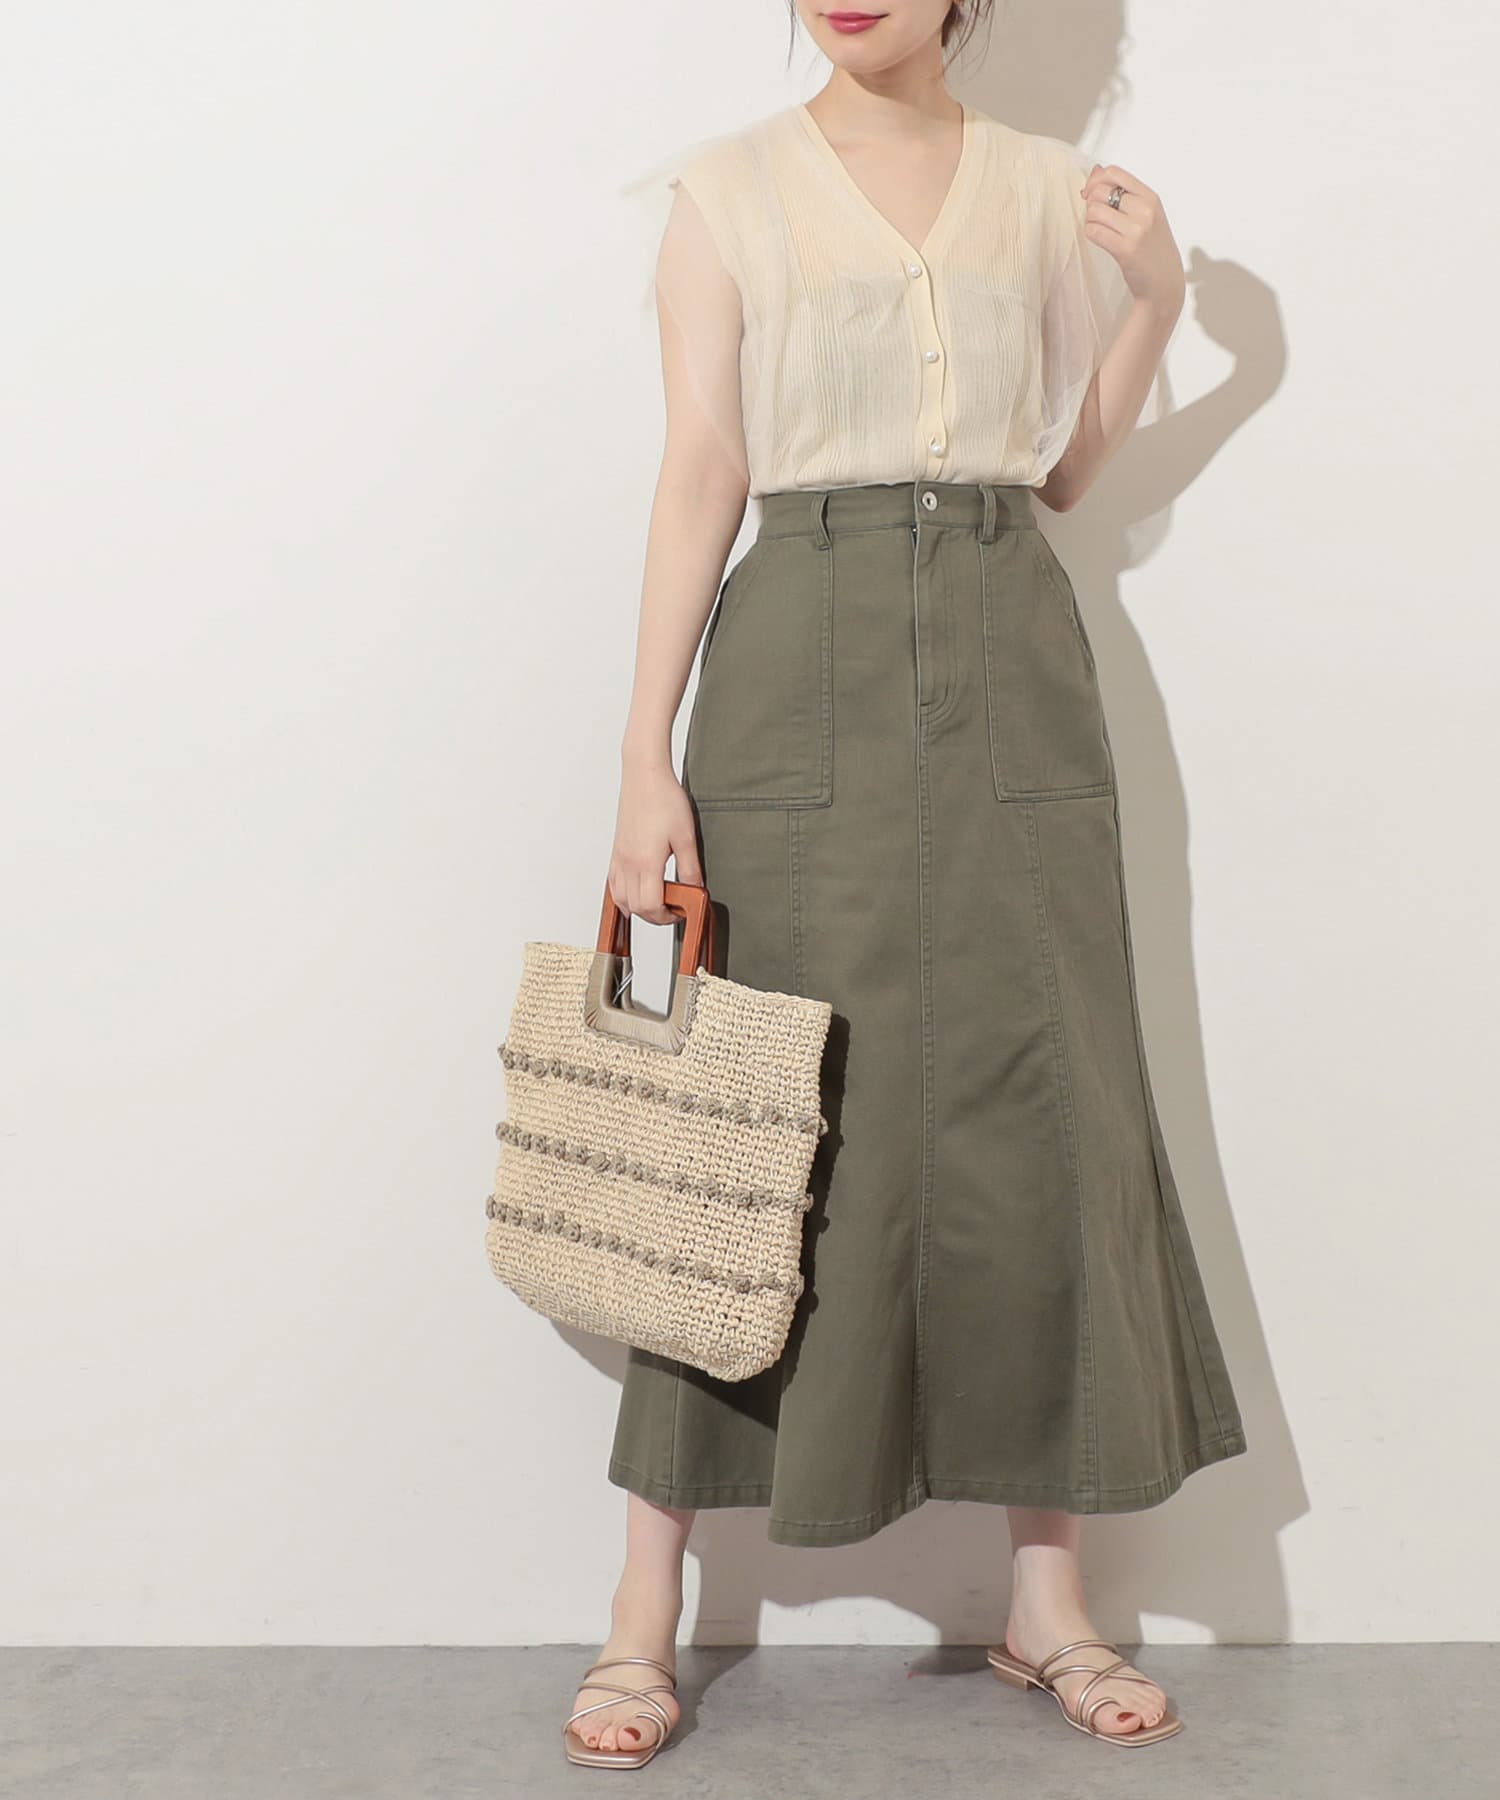 natural couture(ナチュラルクチュール) カーゴPKマーメイドスカート